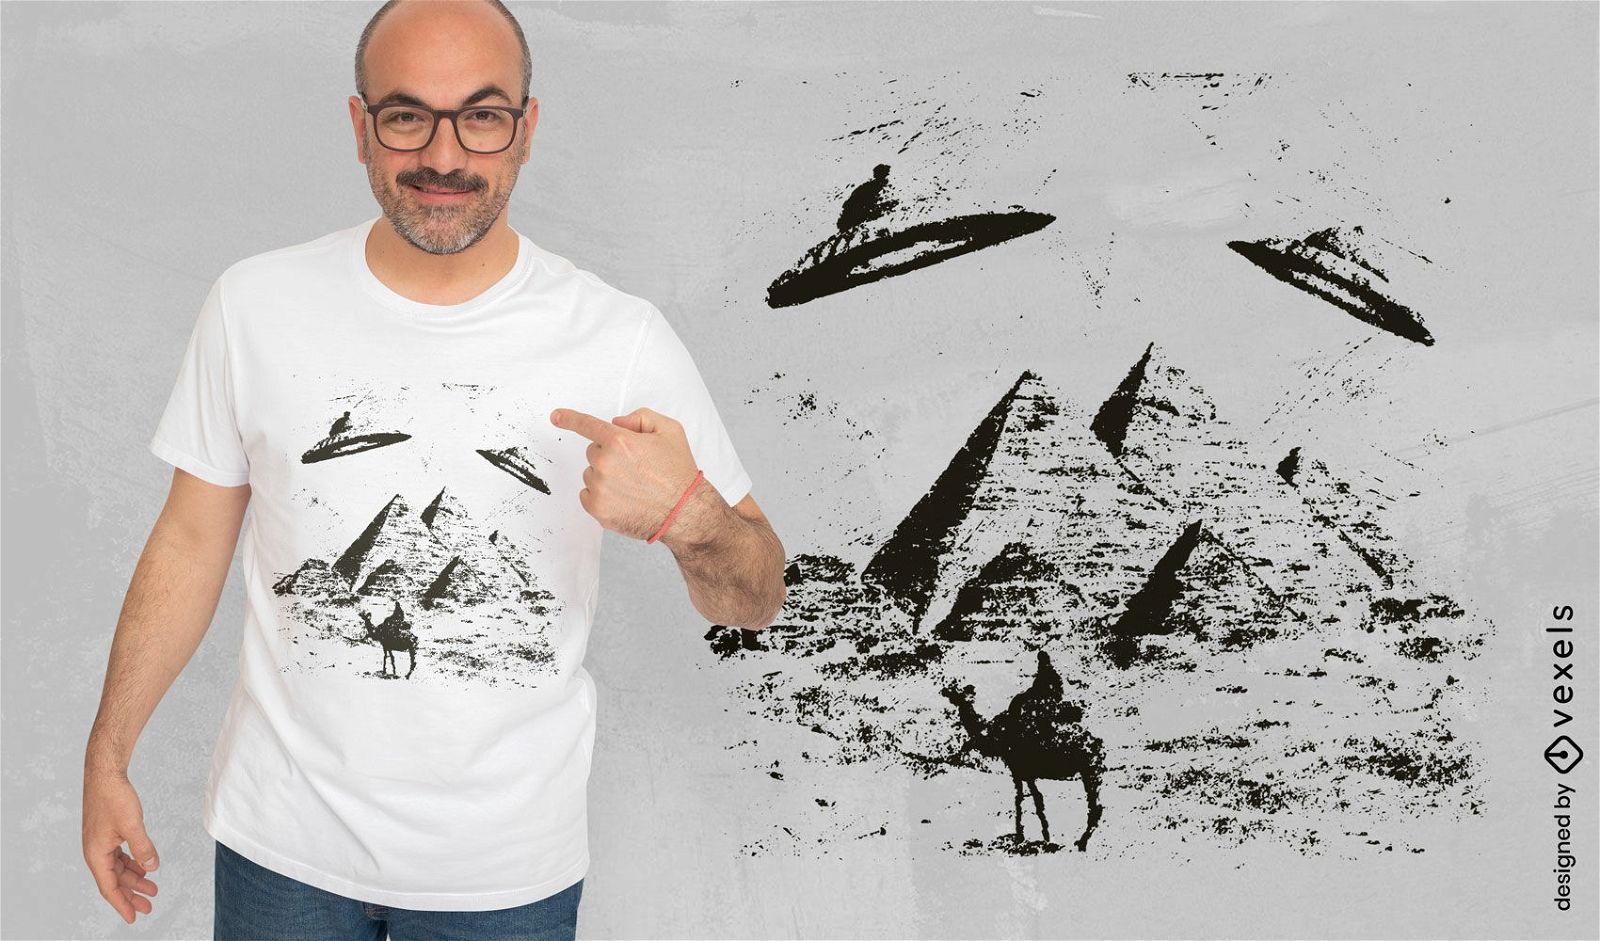 UFO pyramids t-shirt design